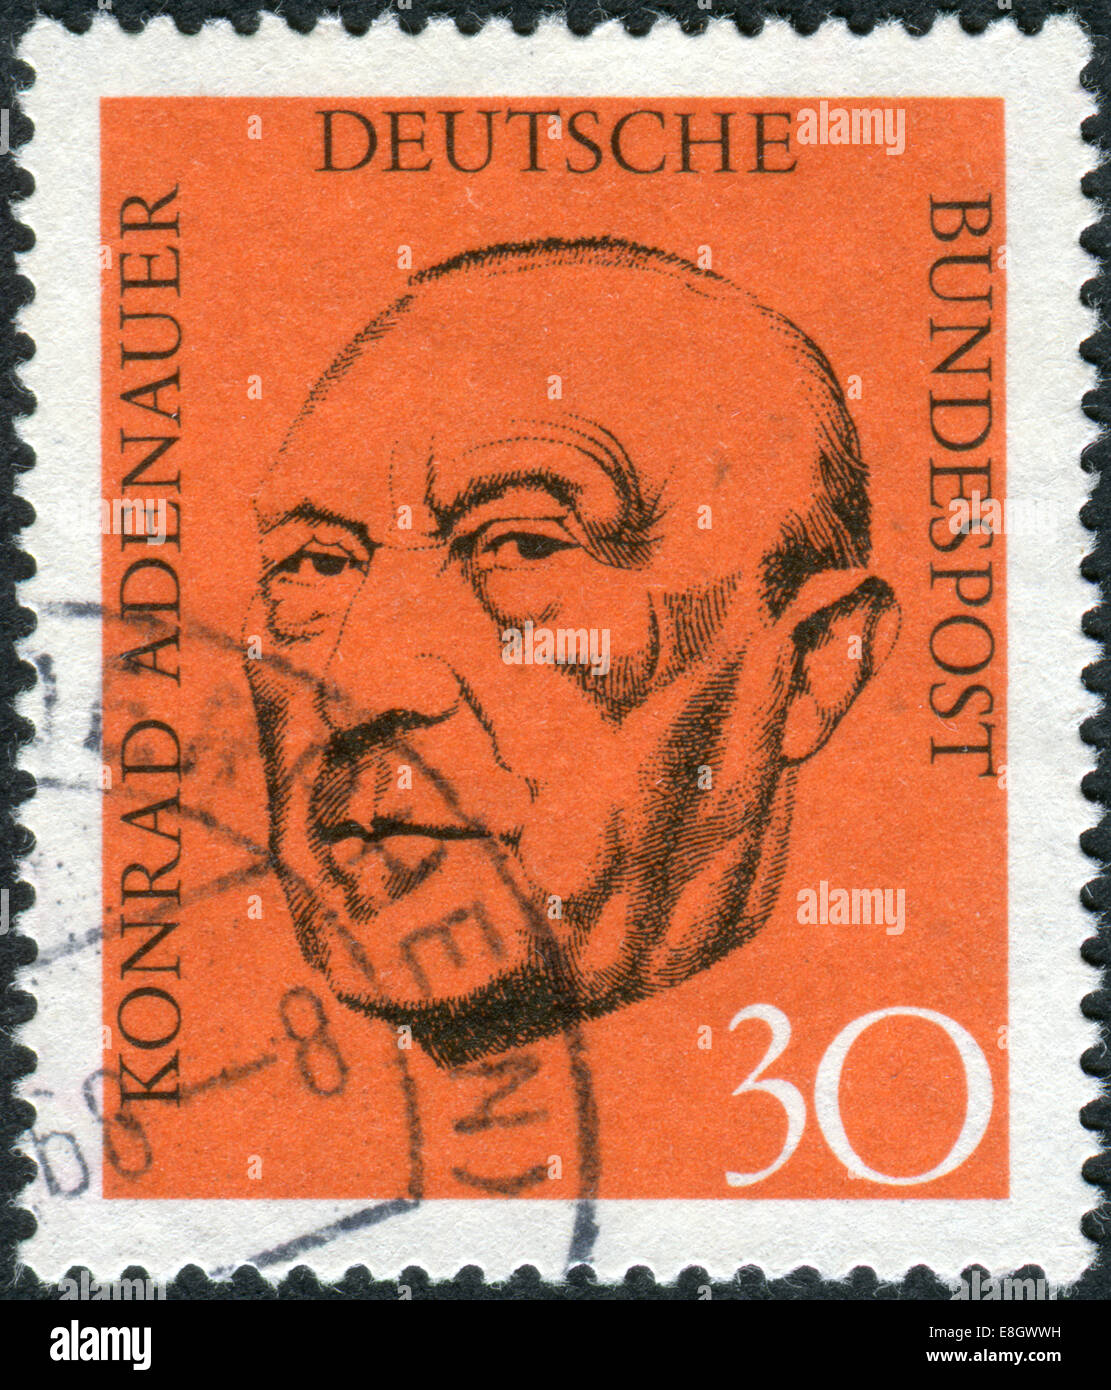 Allemagne - circa 1968 : timbre-poste imprimé en Allemagne, indique le premier chancelier allemand d'après-guerre, Konrad Adenauer, vers 1968 Banque D'Images